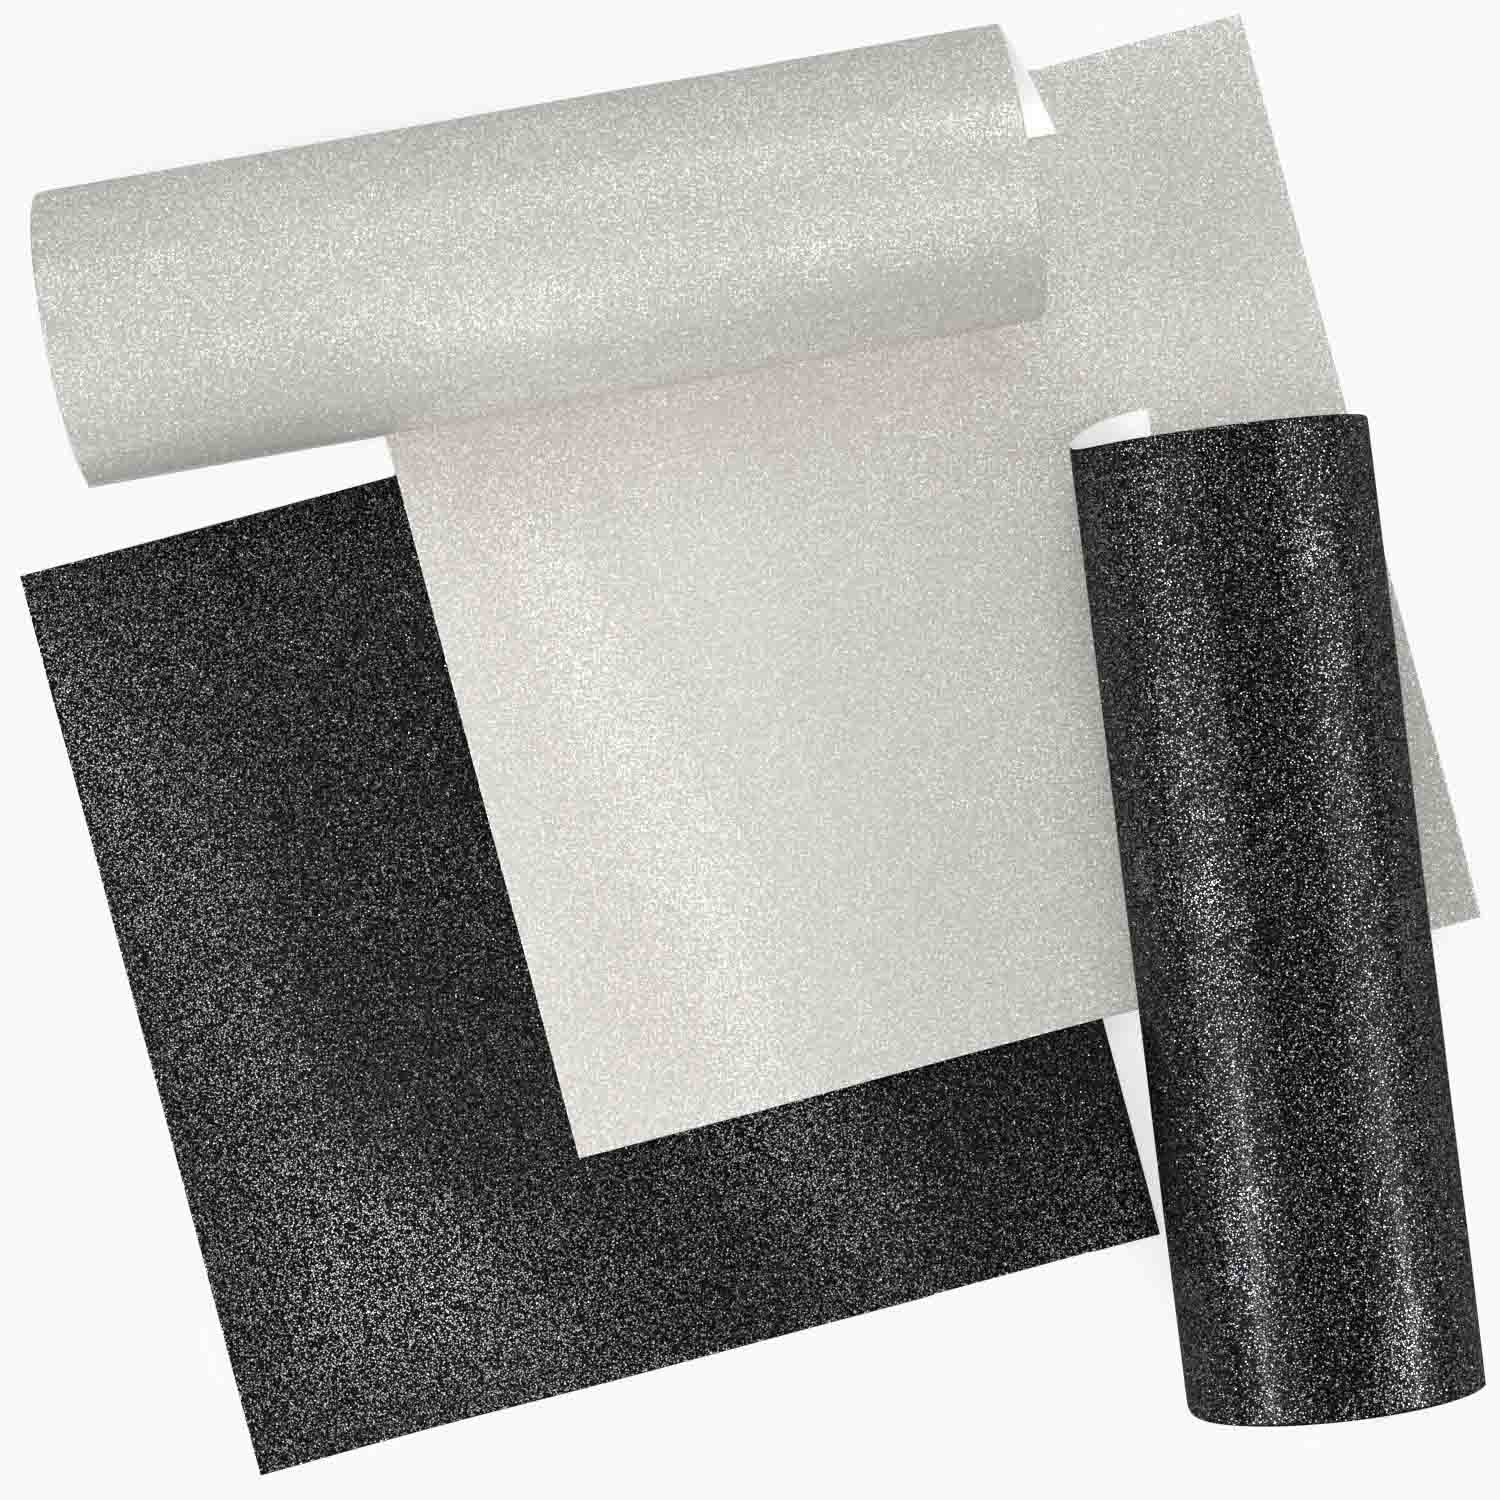 Arteza Glitter Paper, 12x12 Black and White - 24 Sheets